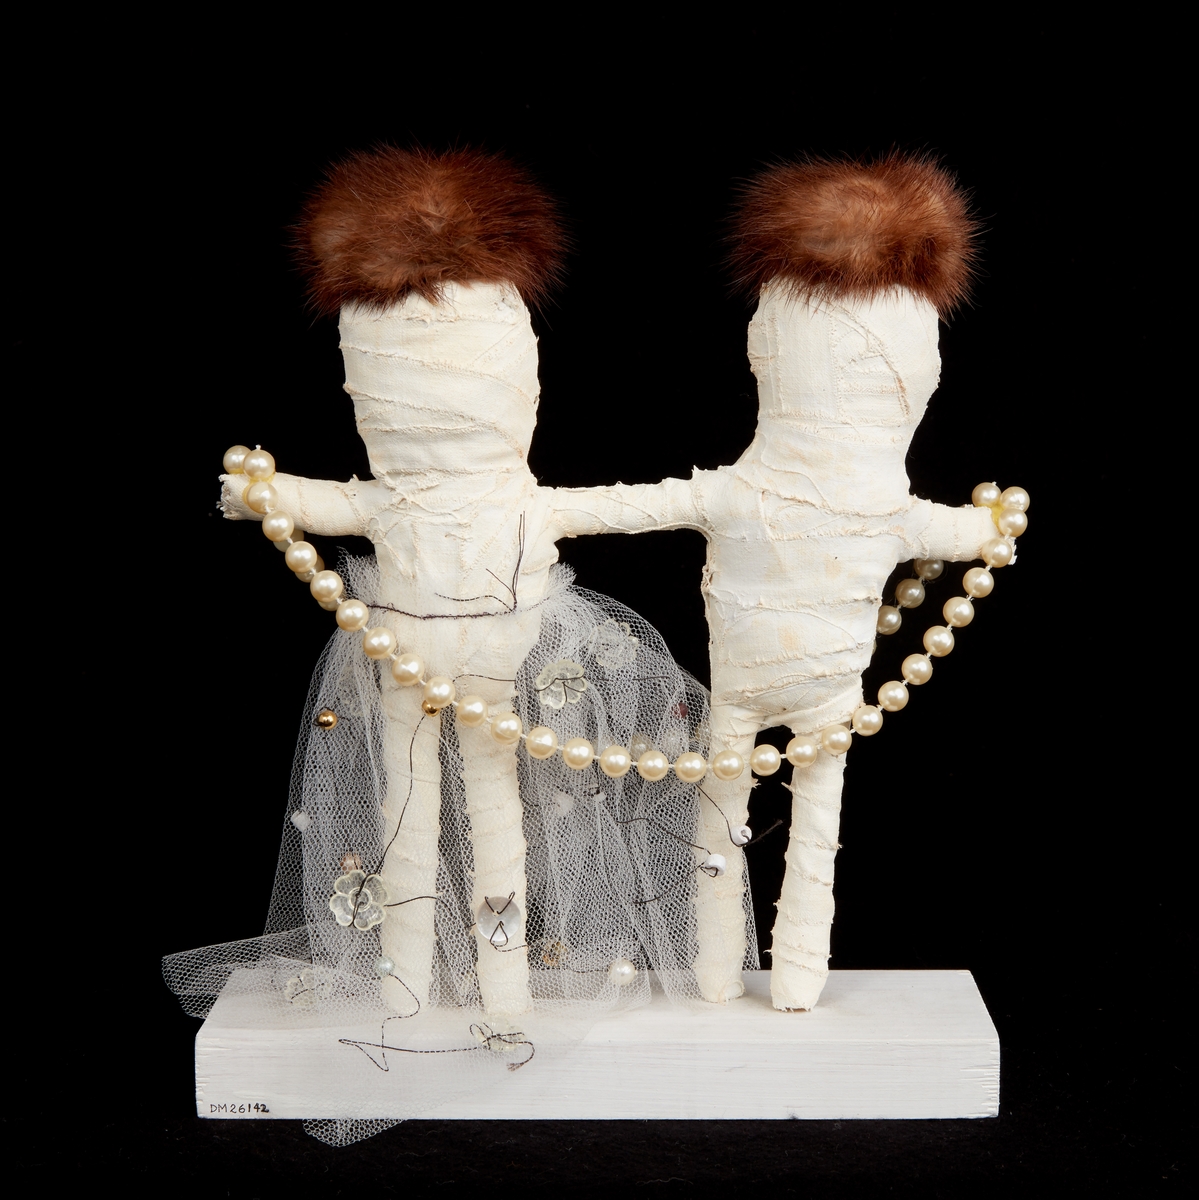 Friskulptur "I vinter blir det kallt" av Anna Sjons Nilsson. En manlig och en kvinnlig figur av vit gipsbinda. Figurerna har bruna pälsbitar på huvudet, knappar till ögon och är klädda i tyll, reflexbricka och pärlor. Sockel av trä.